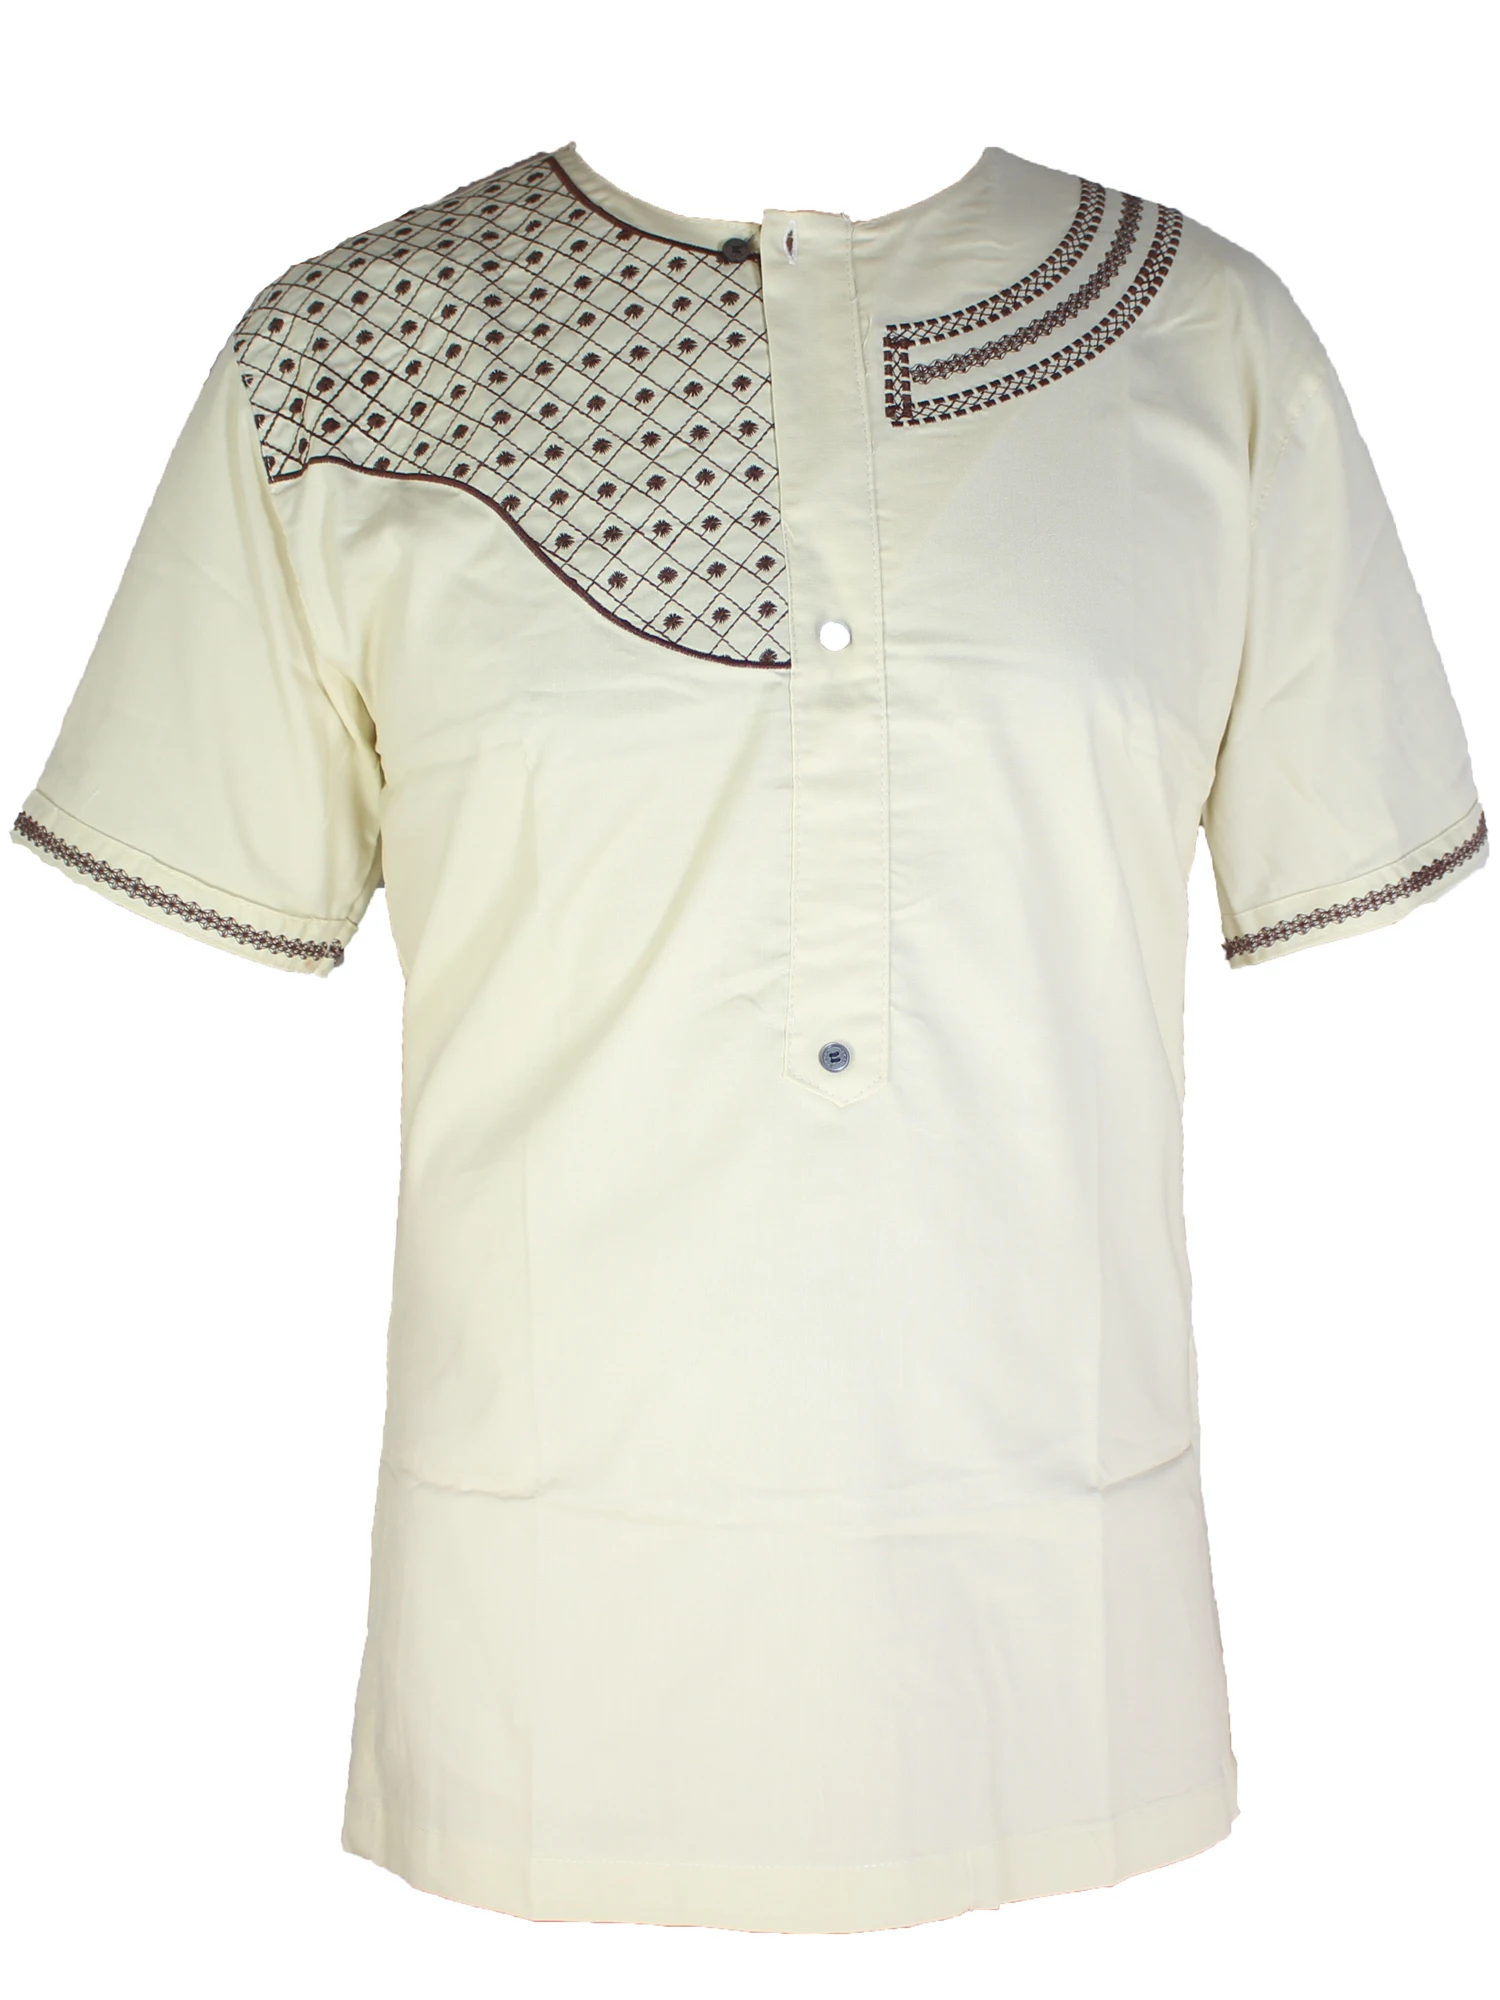 Арабские топы, летняя мужская мусульманская футболка с вышивкой, воротник Хенли, мусульманская одежда для мужчин